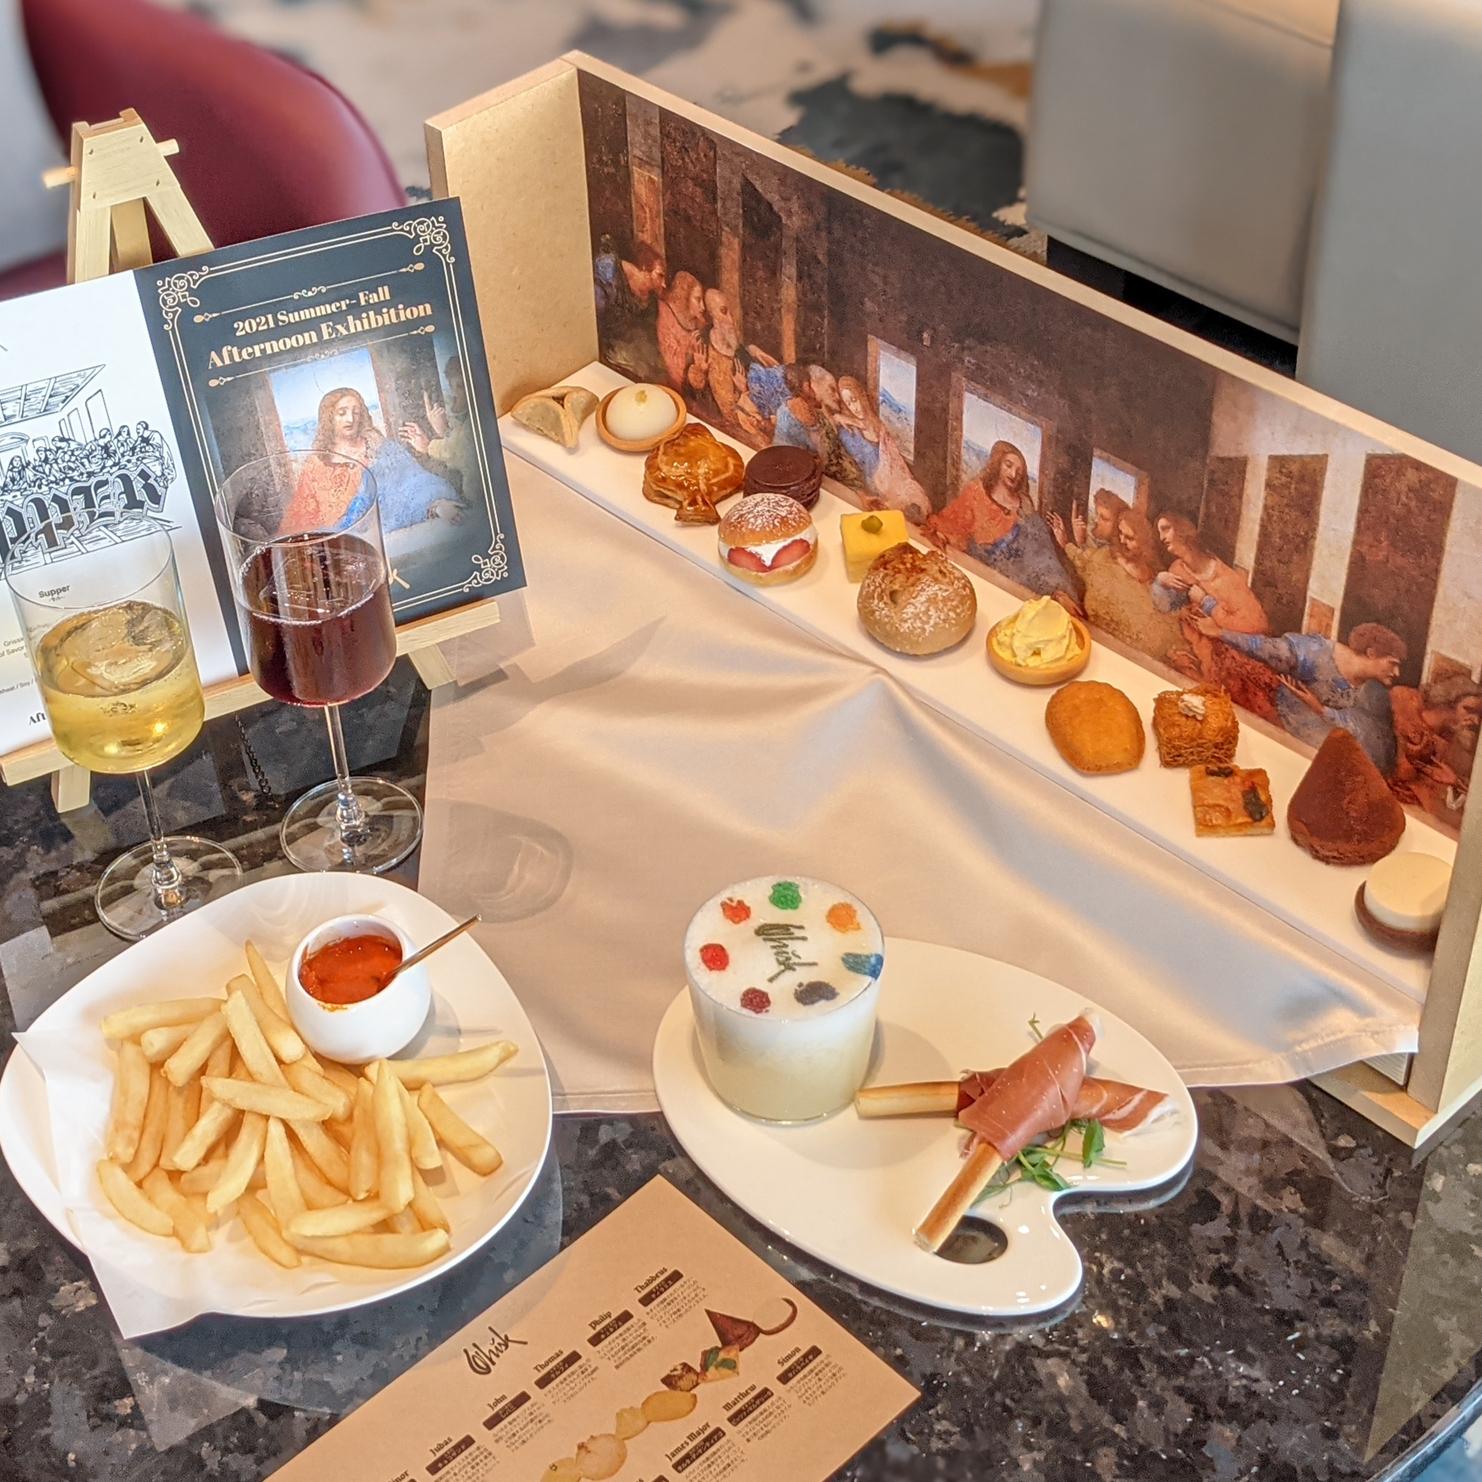 メズム東京 最後の晩餐 の世界観を表現したセットメニュー サパー Supper 16 Akanenが投稿したフォトブック Sharee